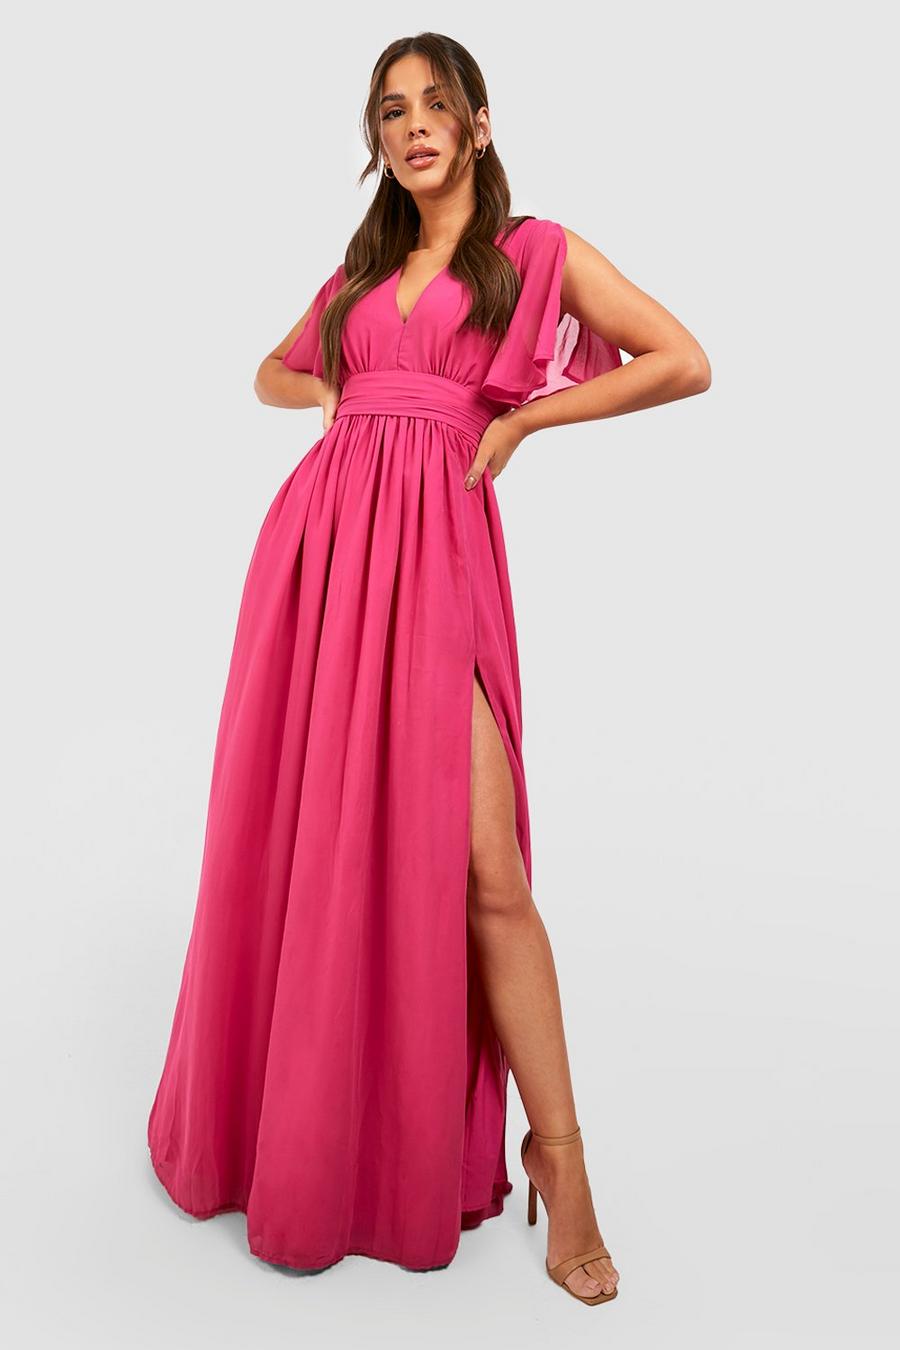 Hot pink Chiffon Plunge Rouched Maxi Dress